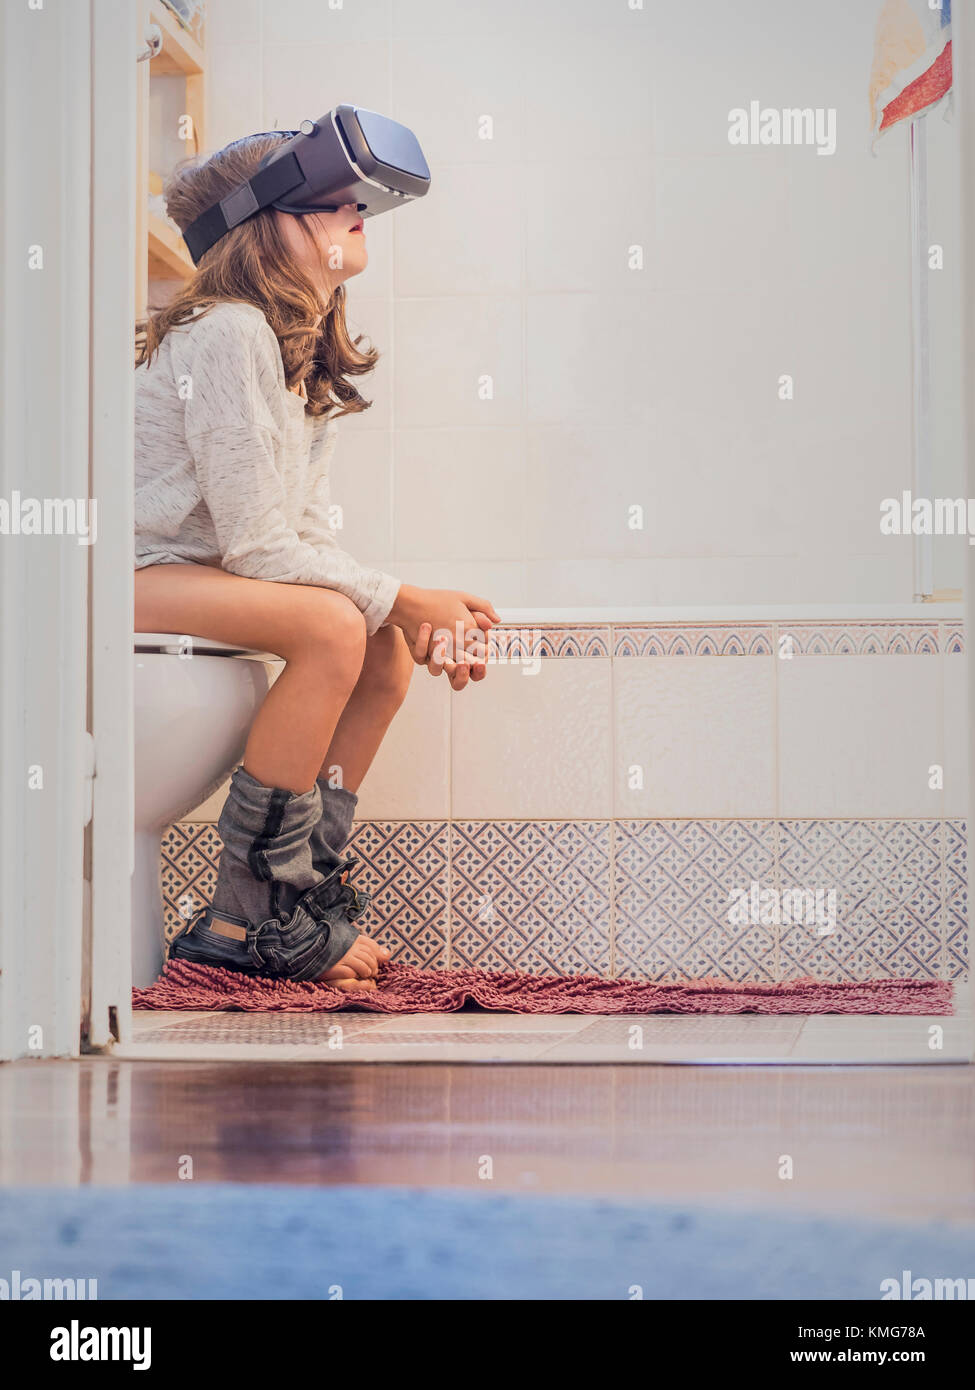 Mädchen, das auf einer Toilettenschüssel sitzt und eine Virtual-Reality-Brille trägt Stockfoto